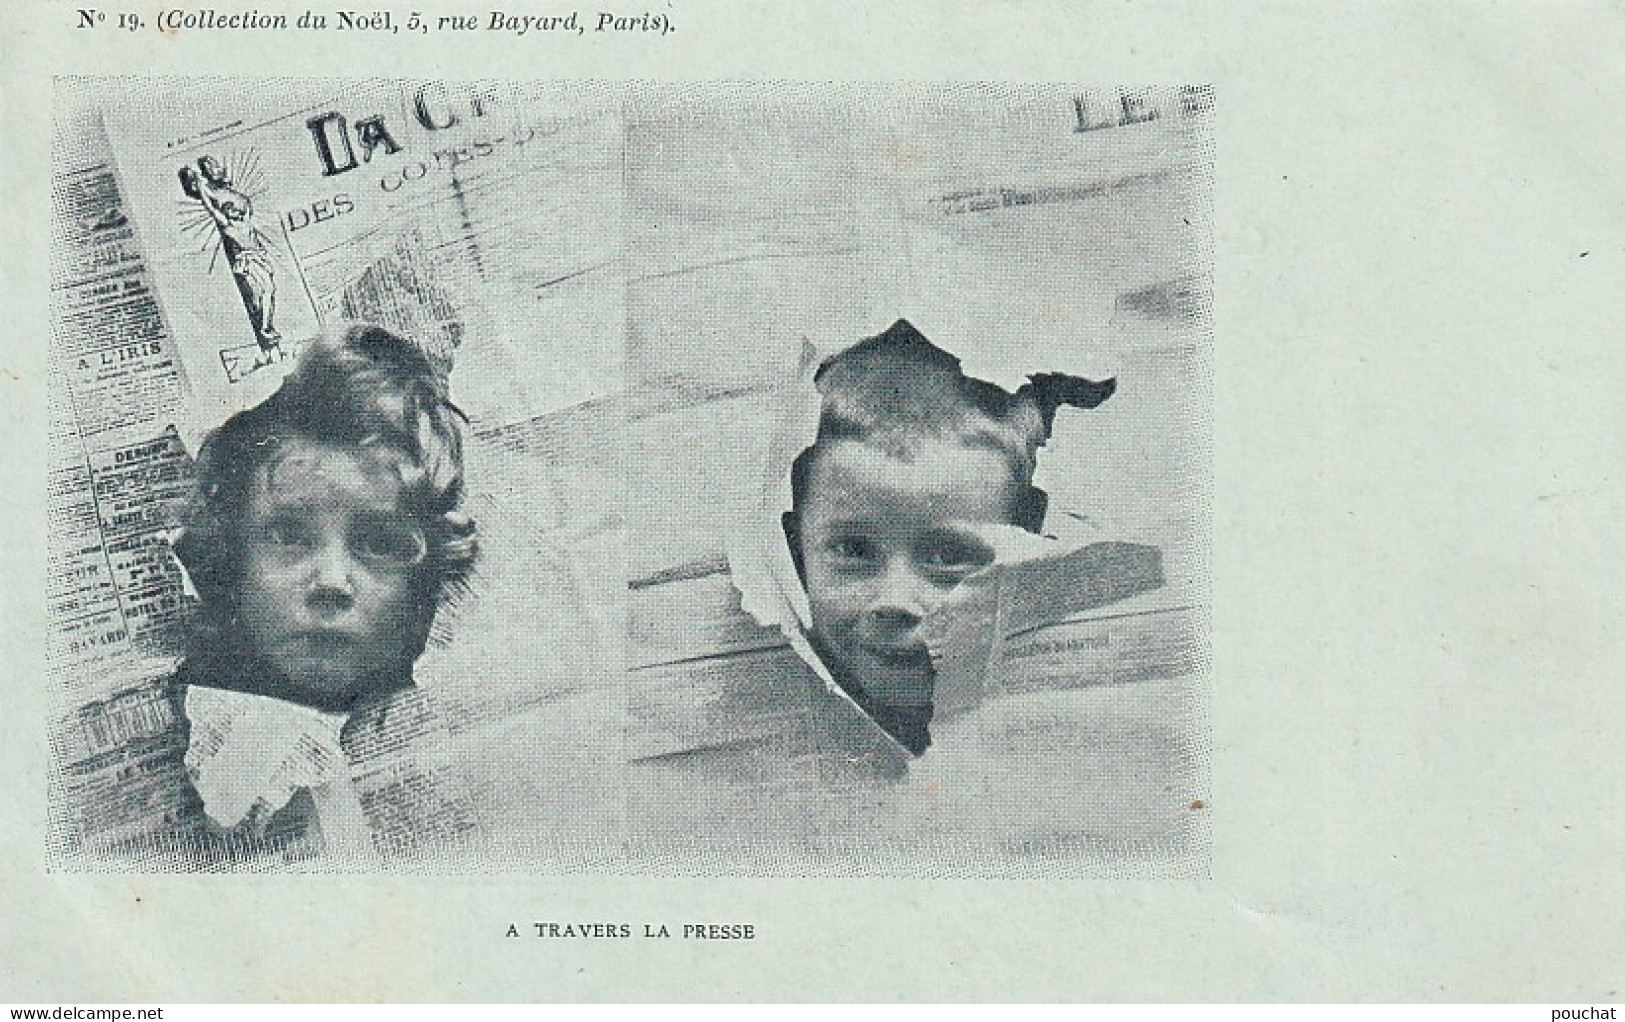 UR Nw40- " A TRAVERS LA PRESSE " - TETES D'ENFANTS DECHIRANT DES JOURNAUX - COLLECTION DU NOEL , PARIS - N°19 - Scene & Paesaggi